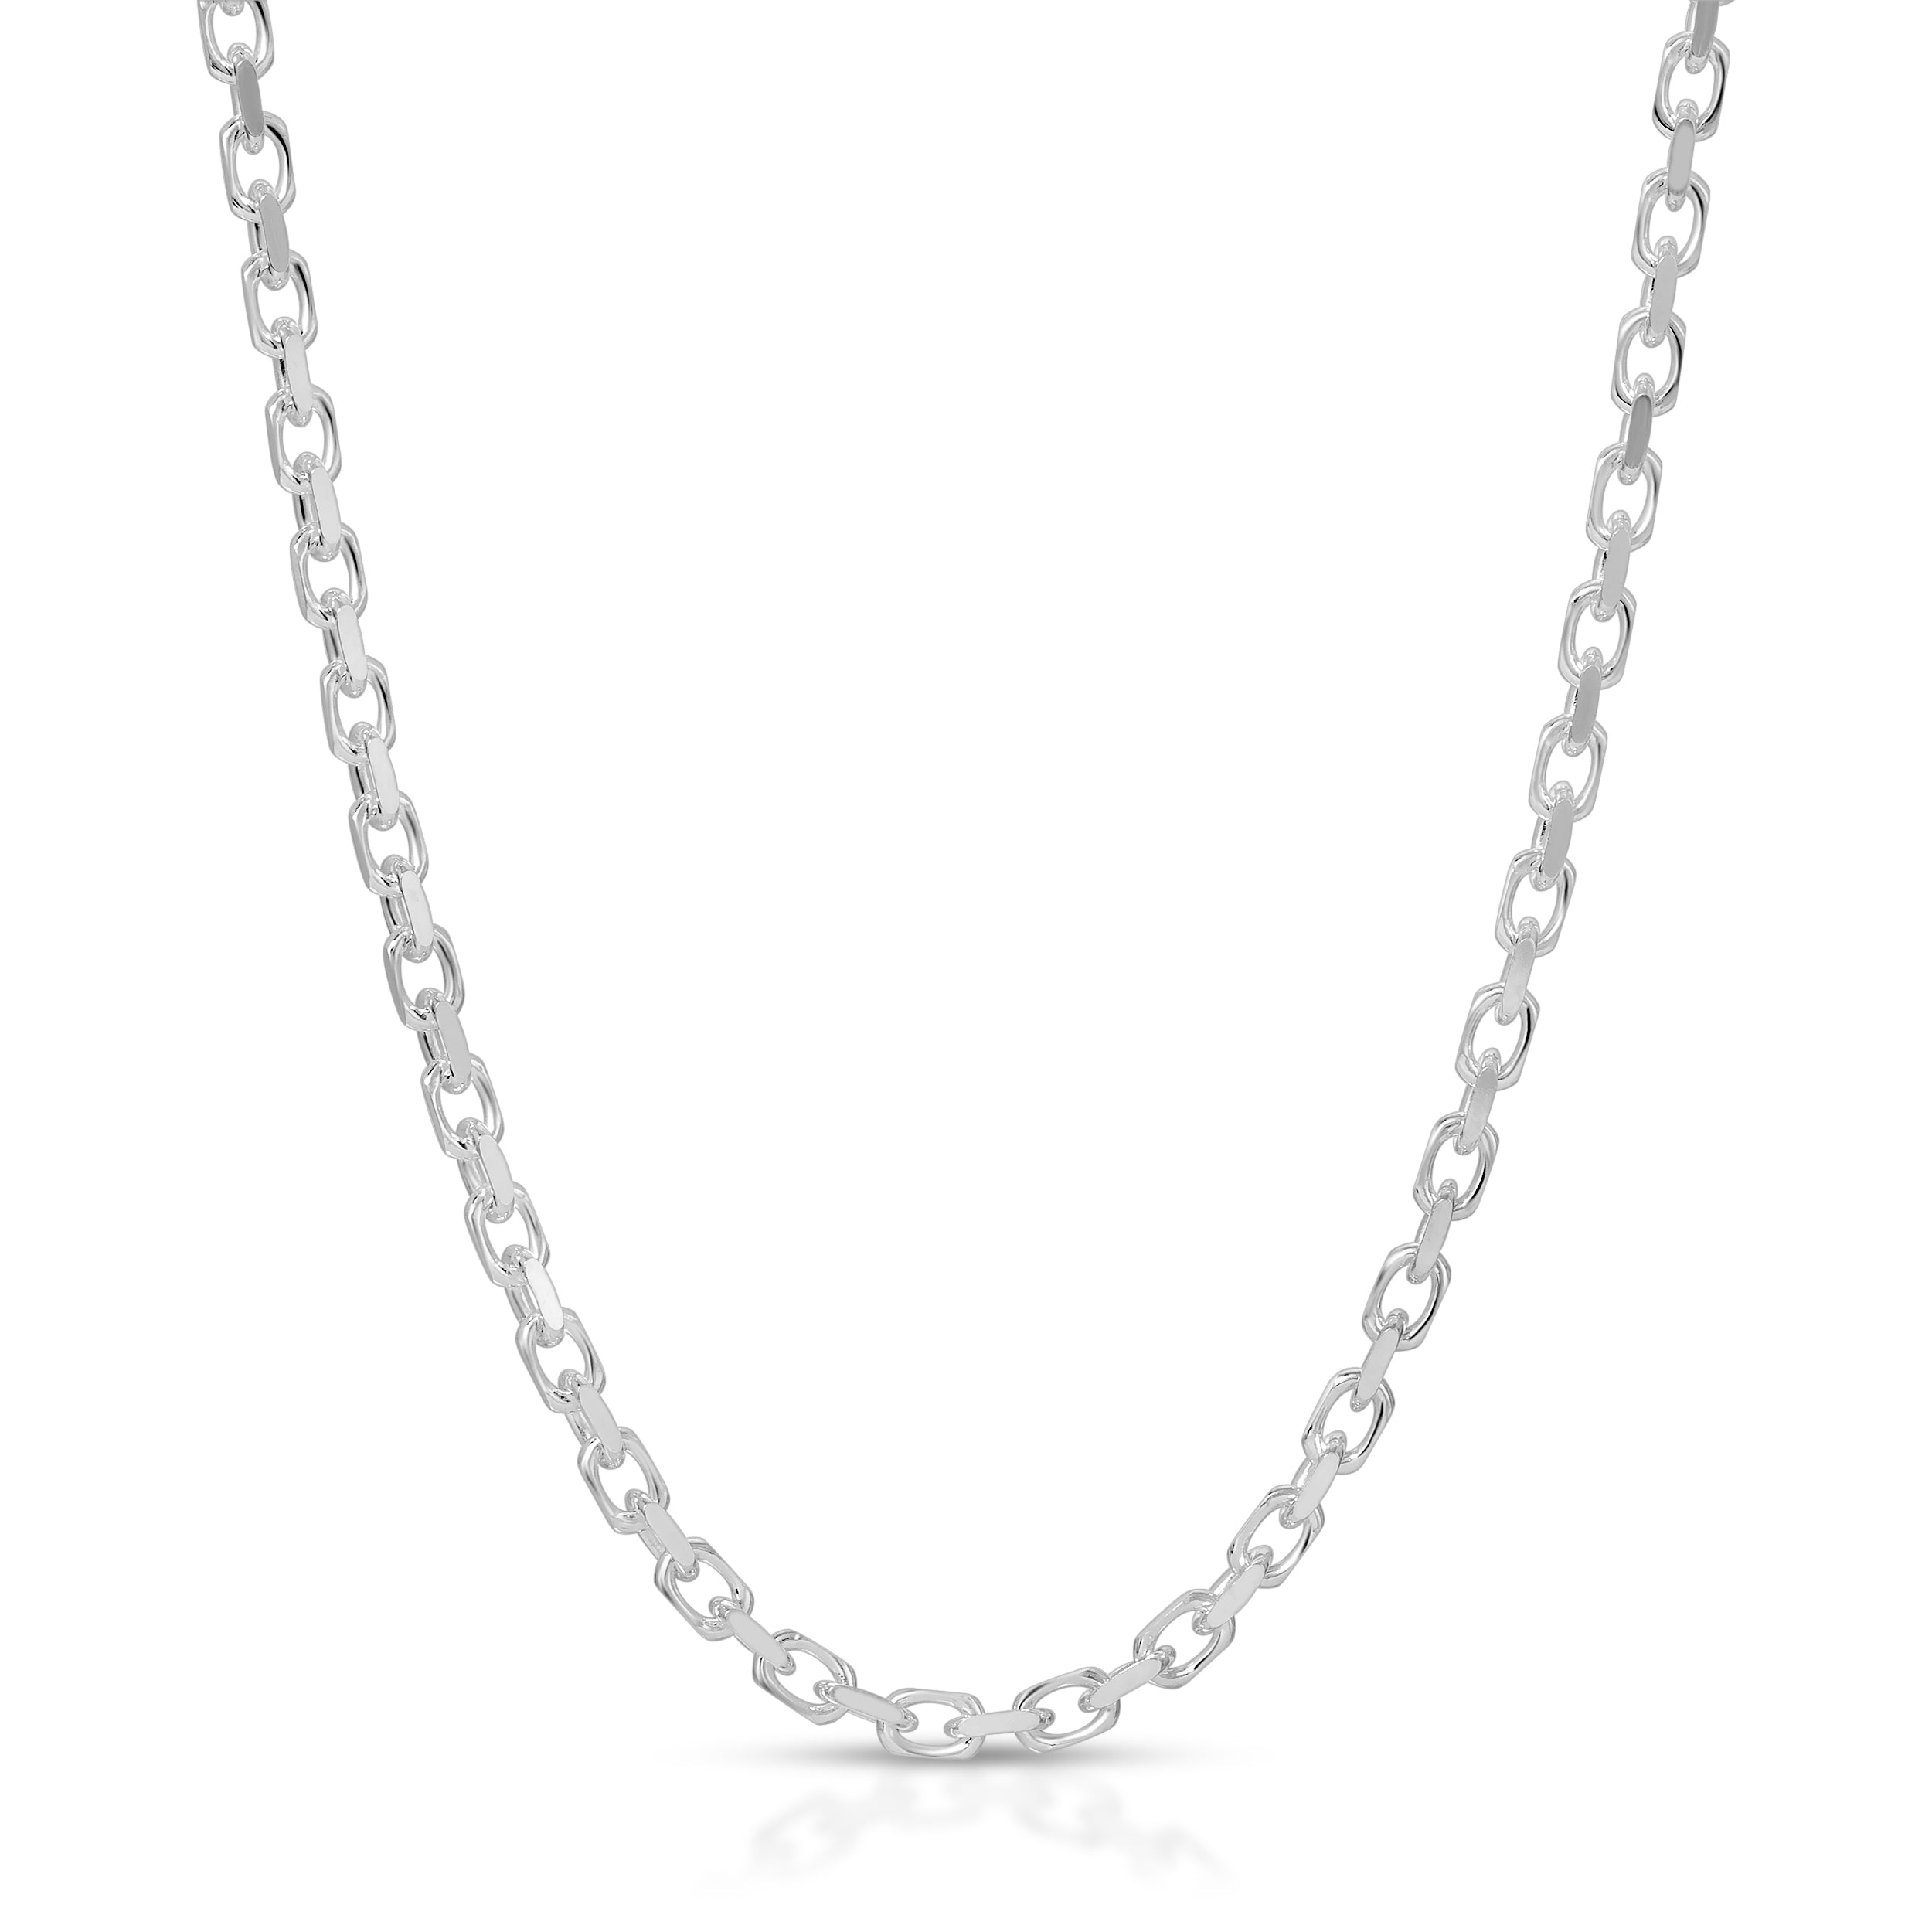 Forzentina chain necklace jewelry